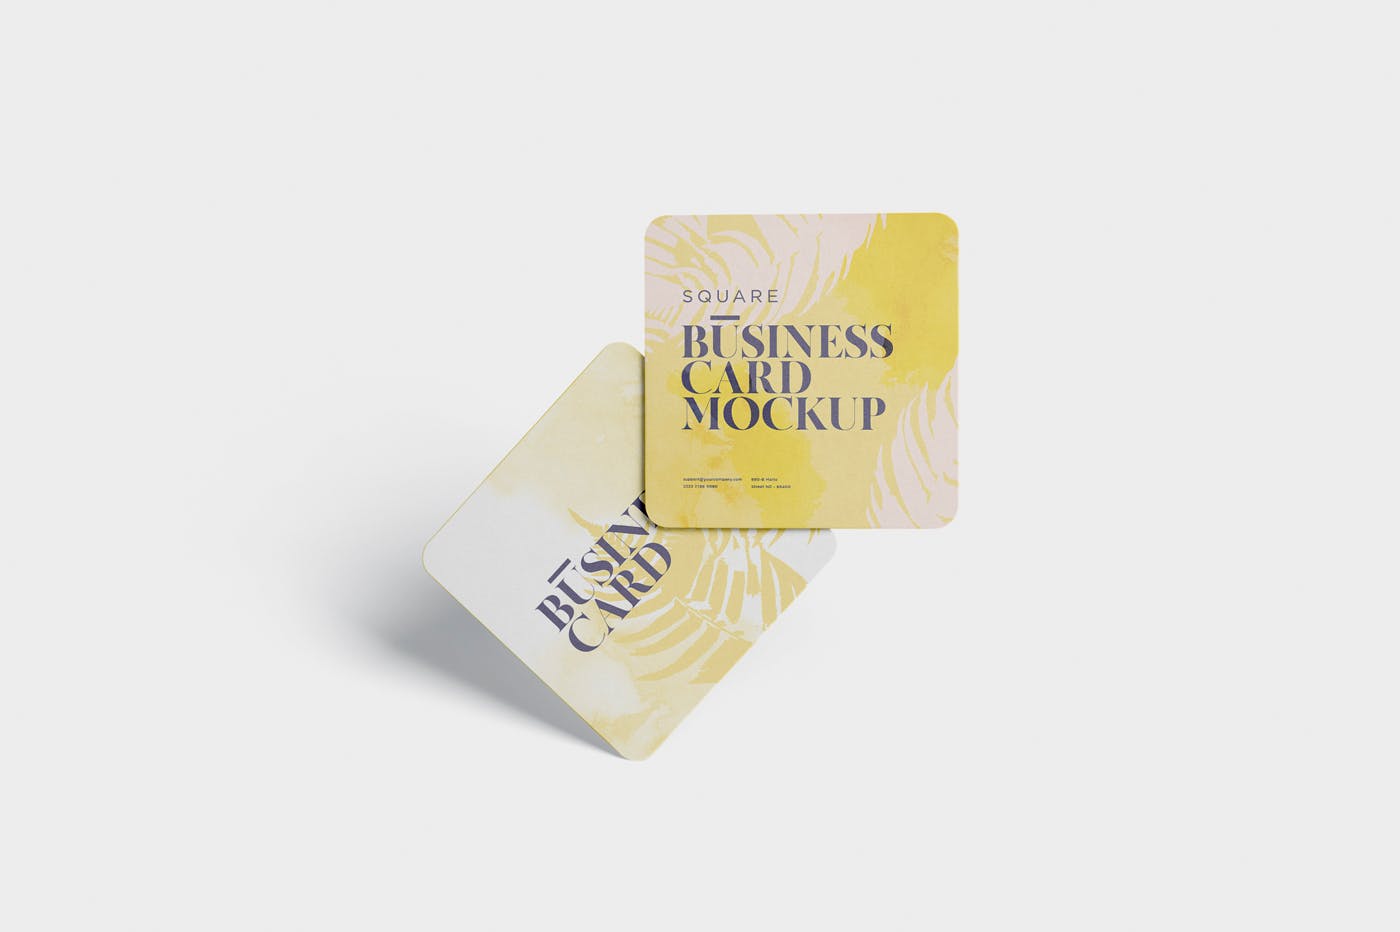 圆角设计风格企业名片效果图非凡图库精选 Business Card Mockup – Square Round Corner插图(2)